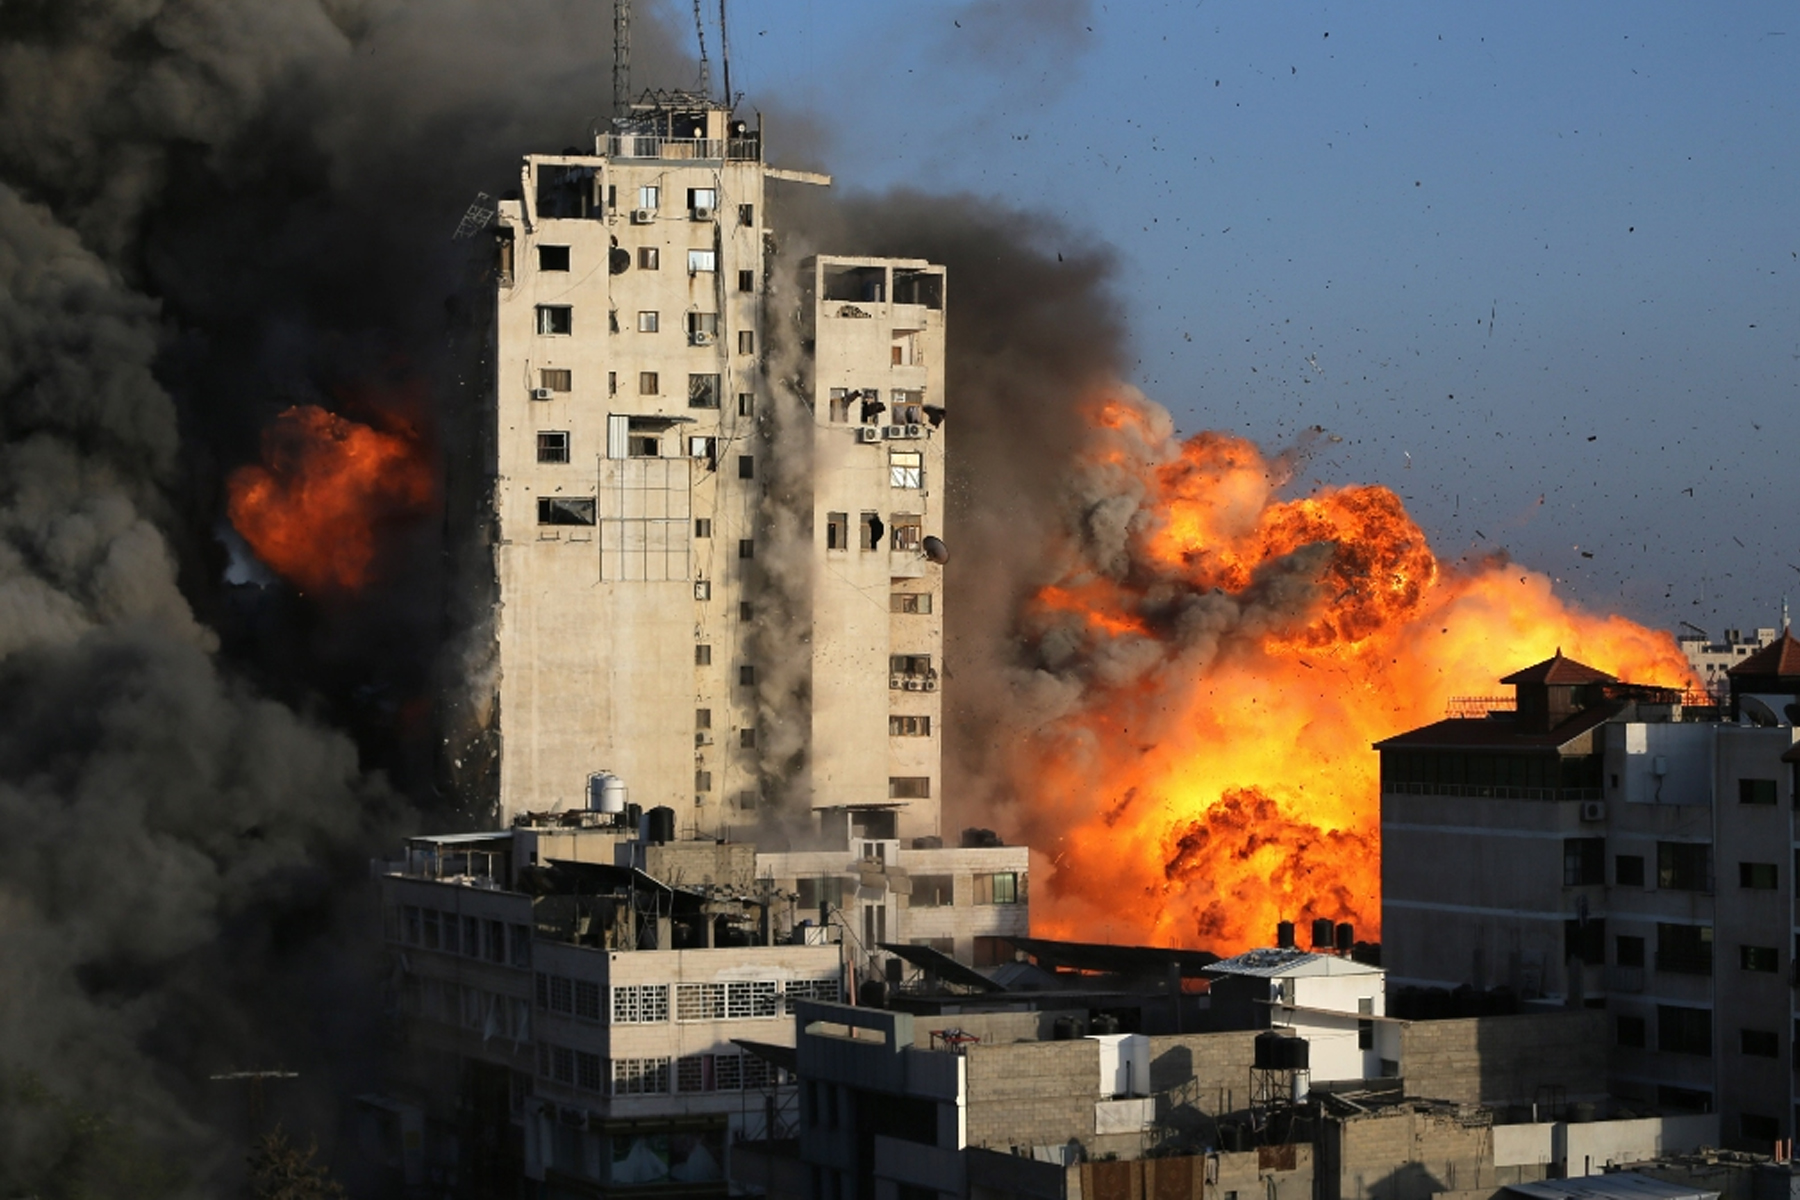 حملات اسرائیل باعث کشته شدن فرمانده ارشد حماس شد؛ فلسطینی ها موشک شلیک کردند